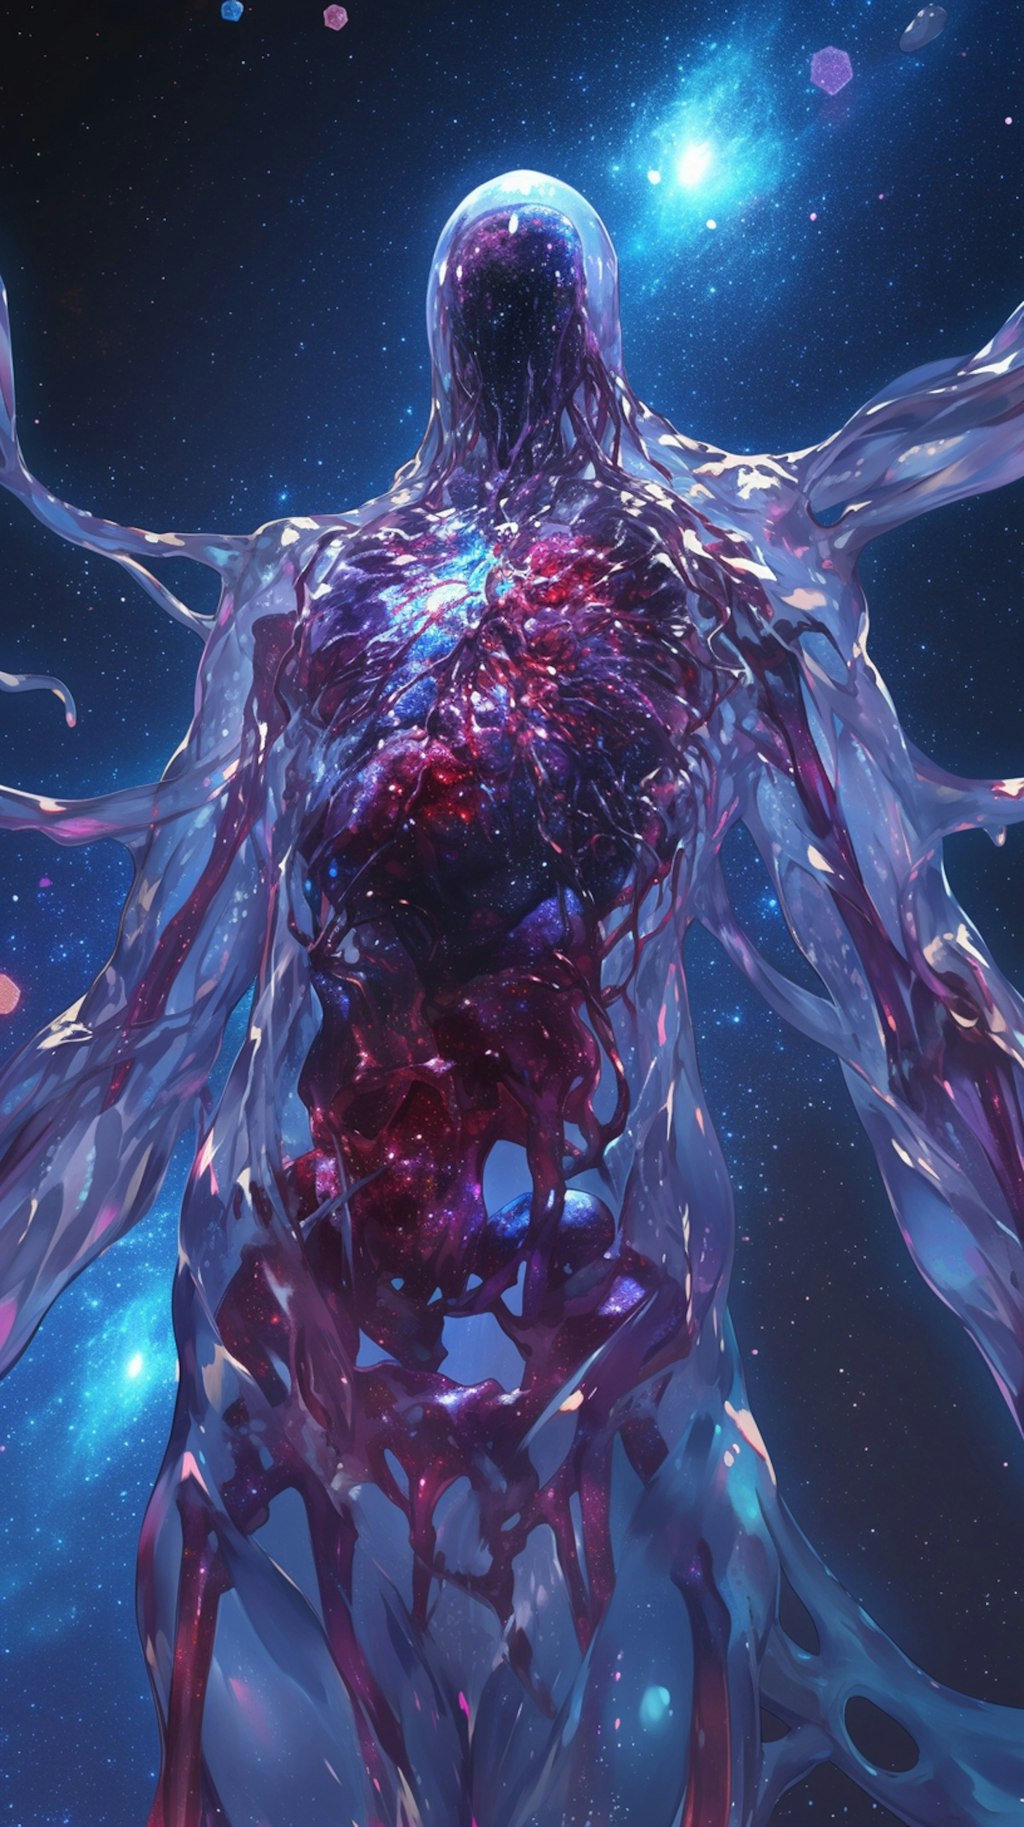 血管と骸骨のスライム巨人(銀河)１